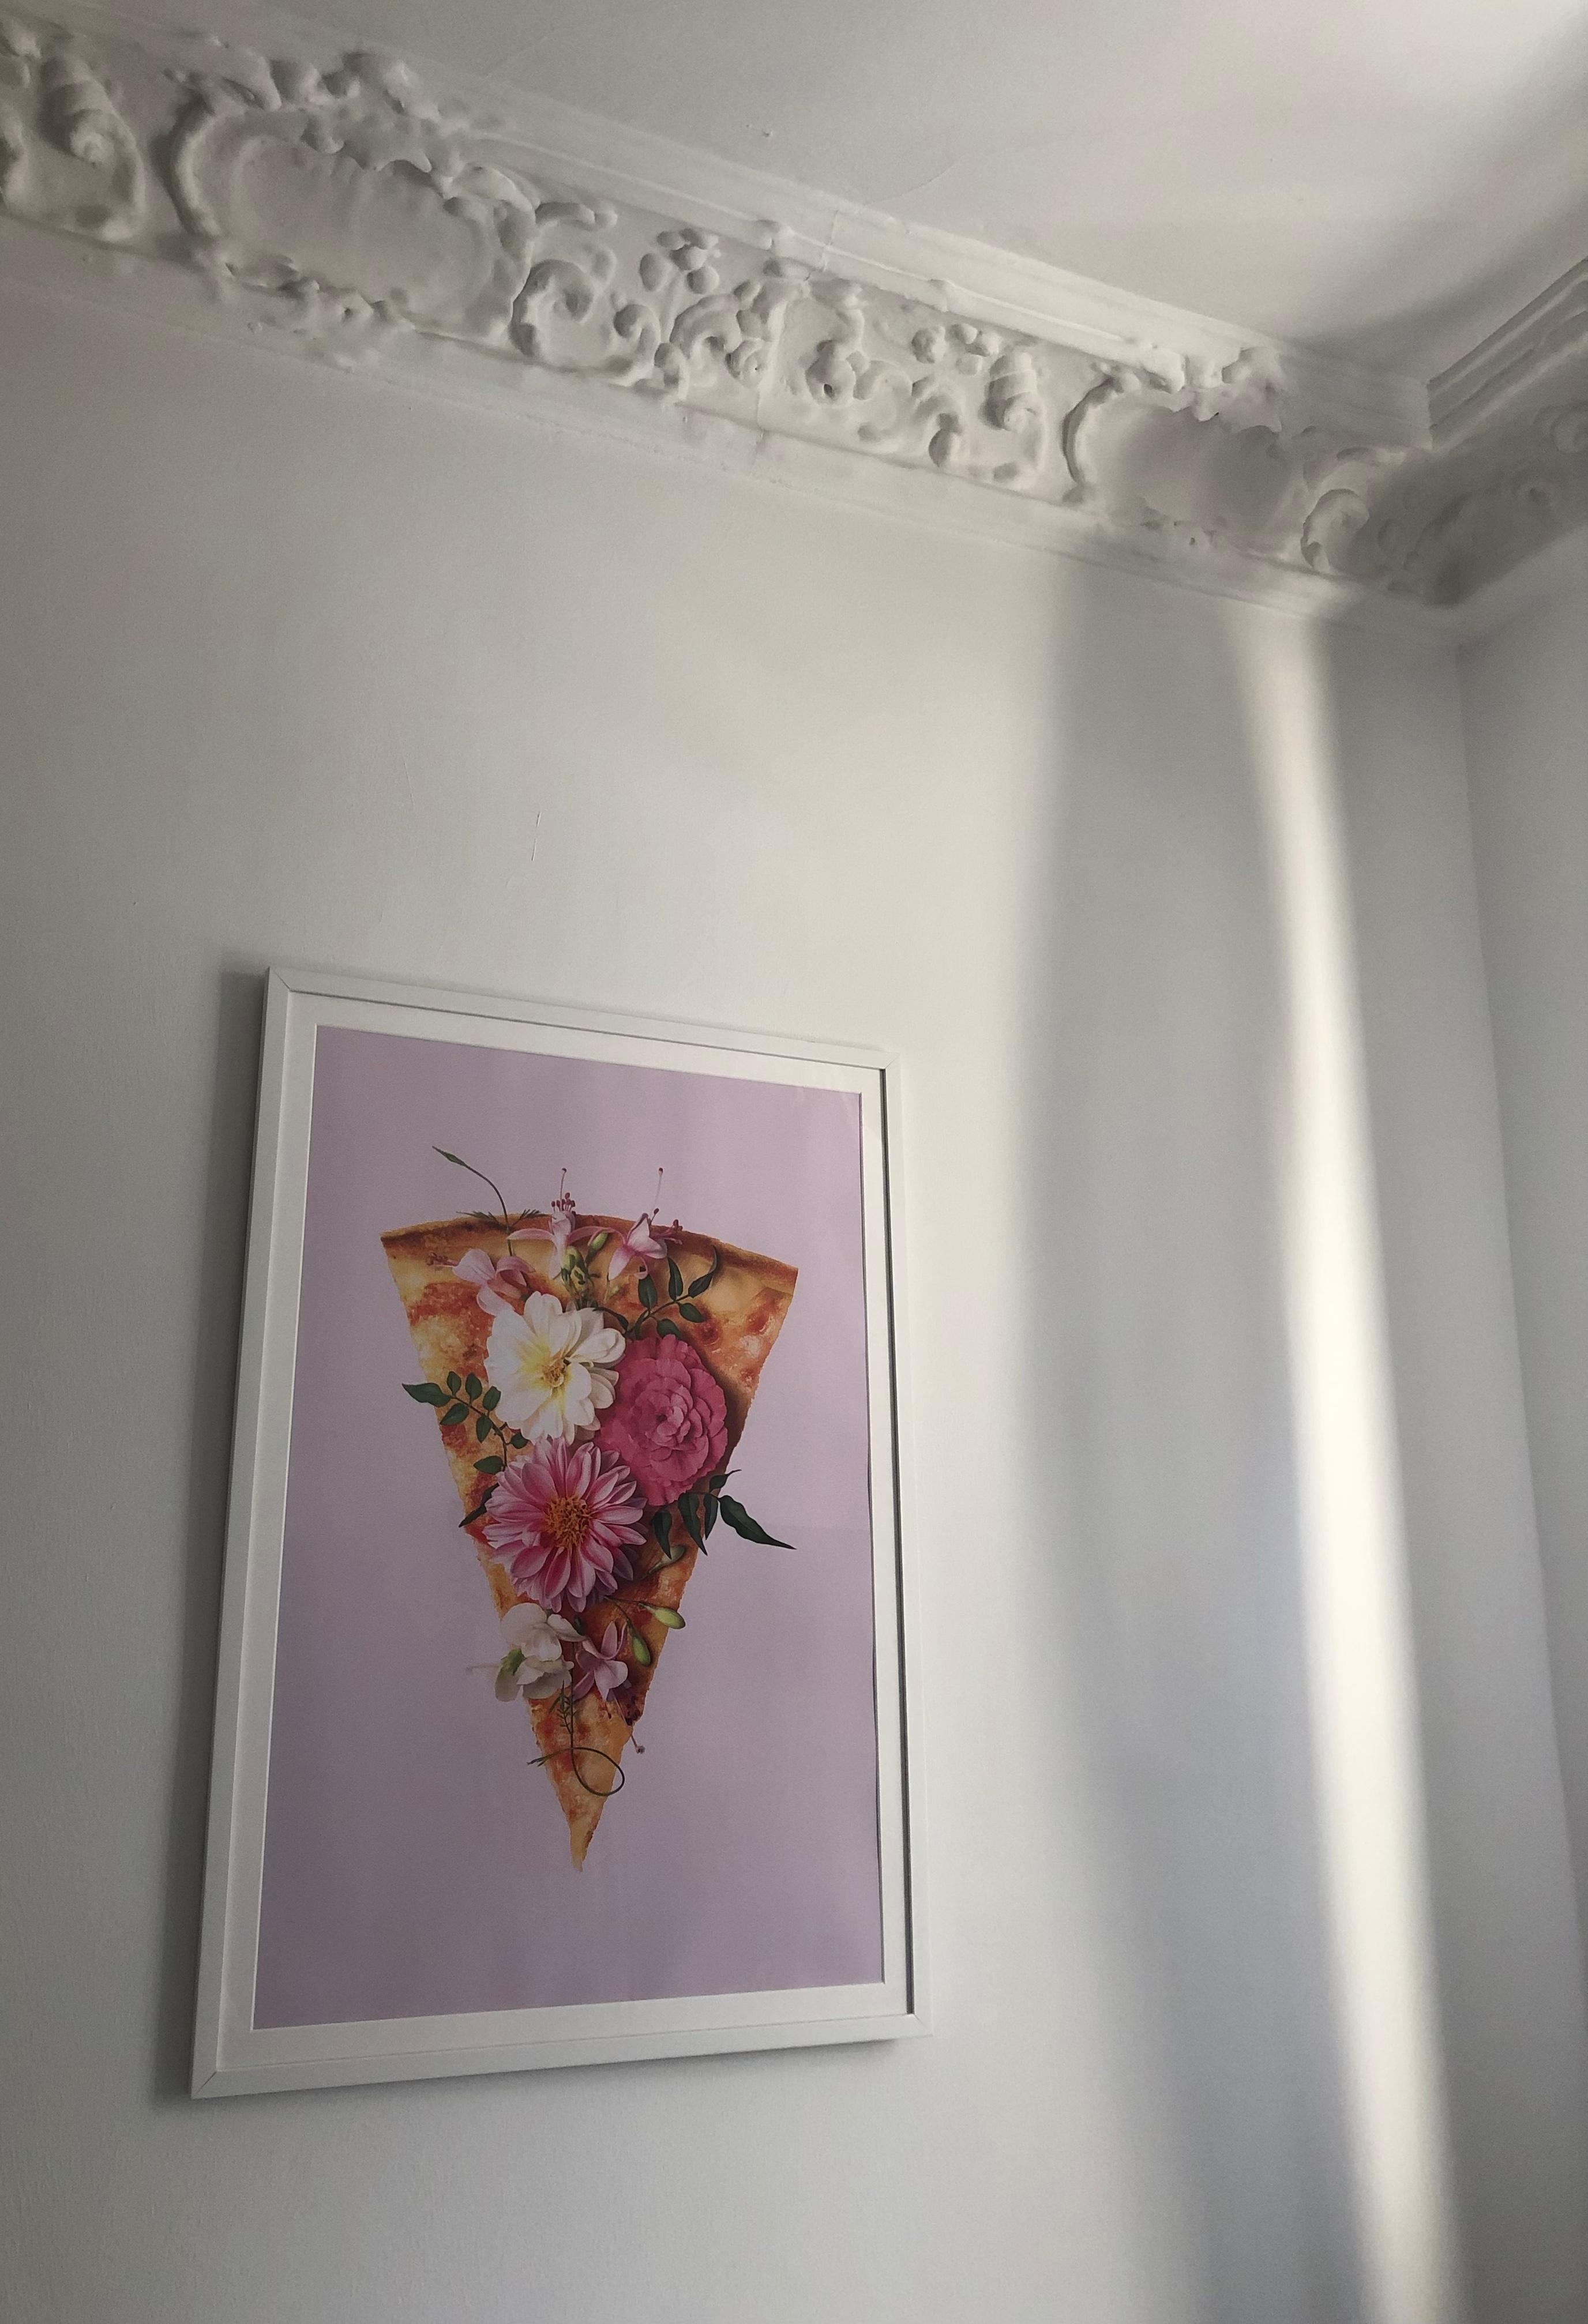 Pizza Hut aka meine #Küche 🍕 Seid ihr Team klassische #Kunst oder kreative #Poster ? 
#bild #bilderrahmen #wanddeko 